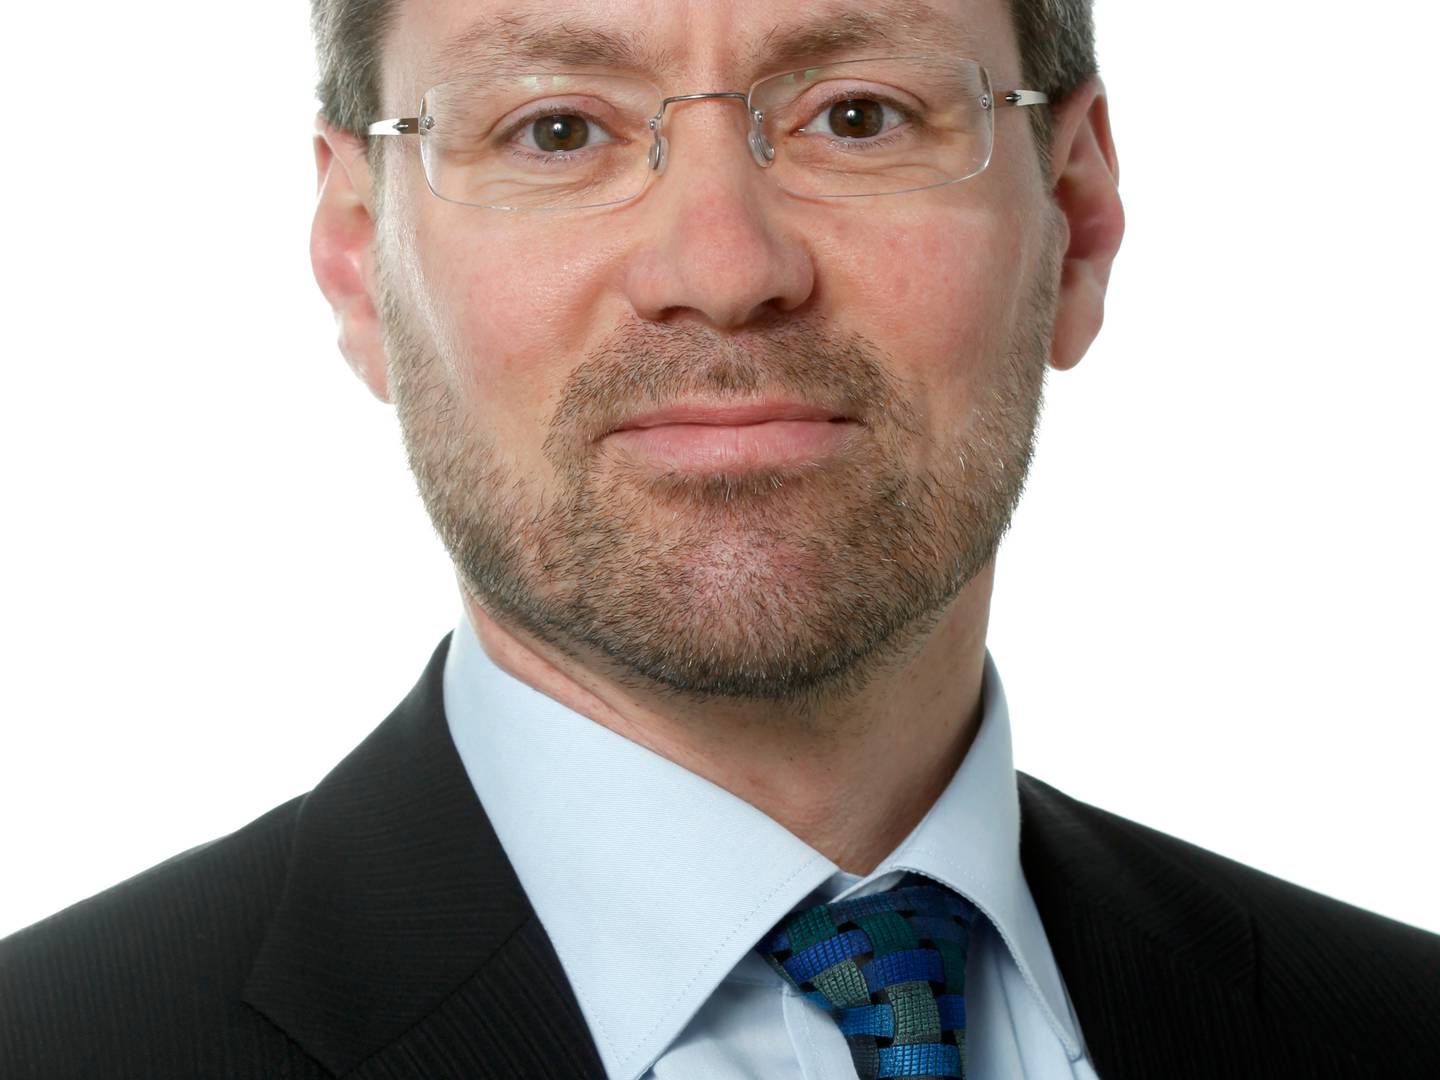 Eerhvervsøkonomisk chef Klaus Kaiser fra Seges Innovation. | Foto: Pr / Seges